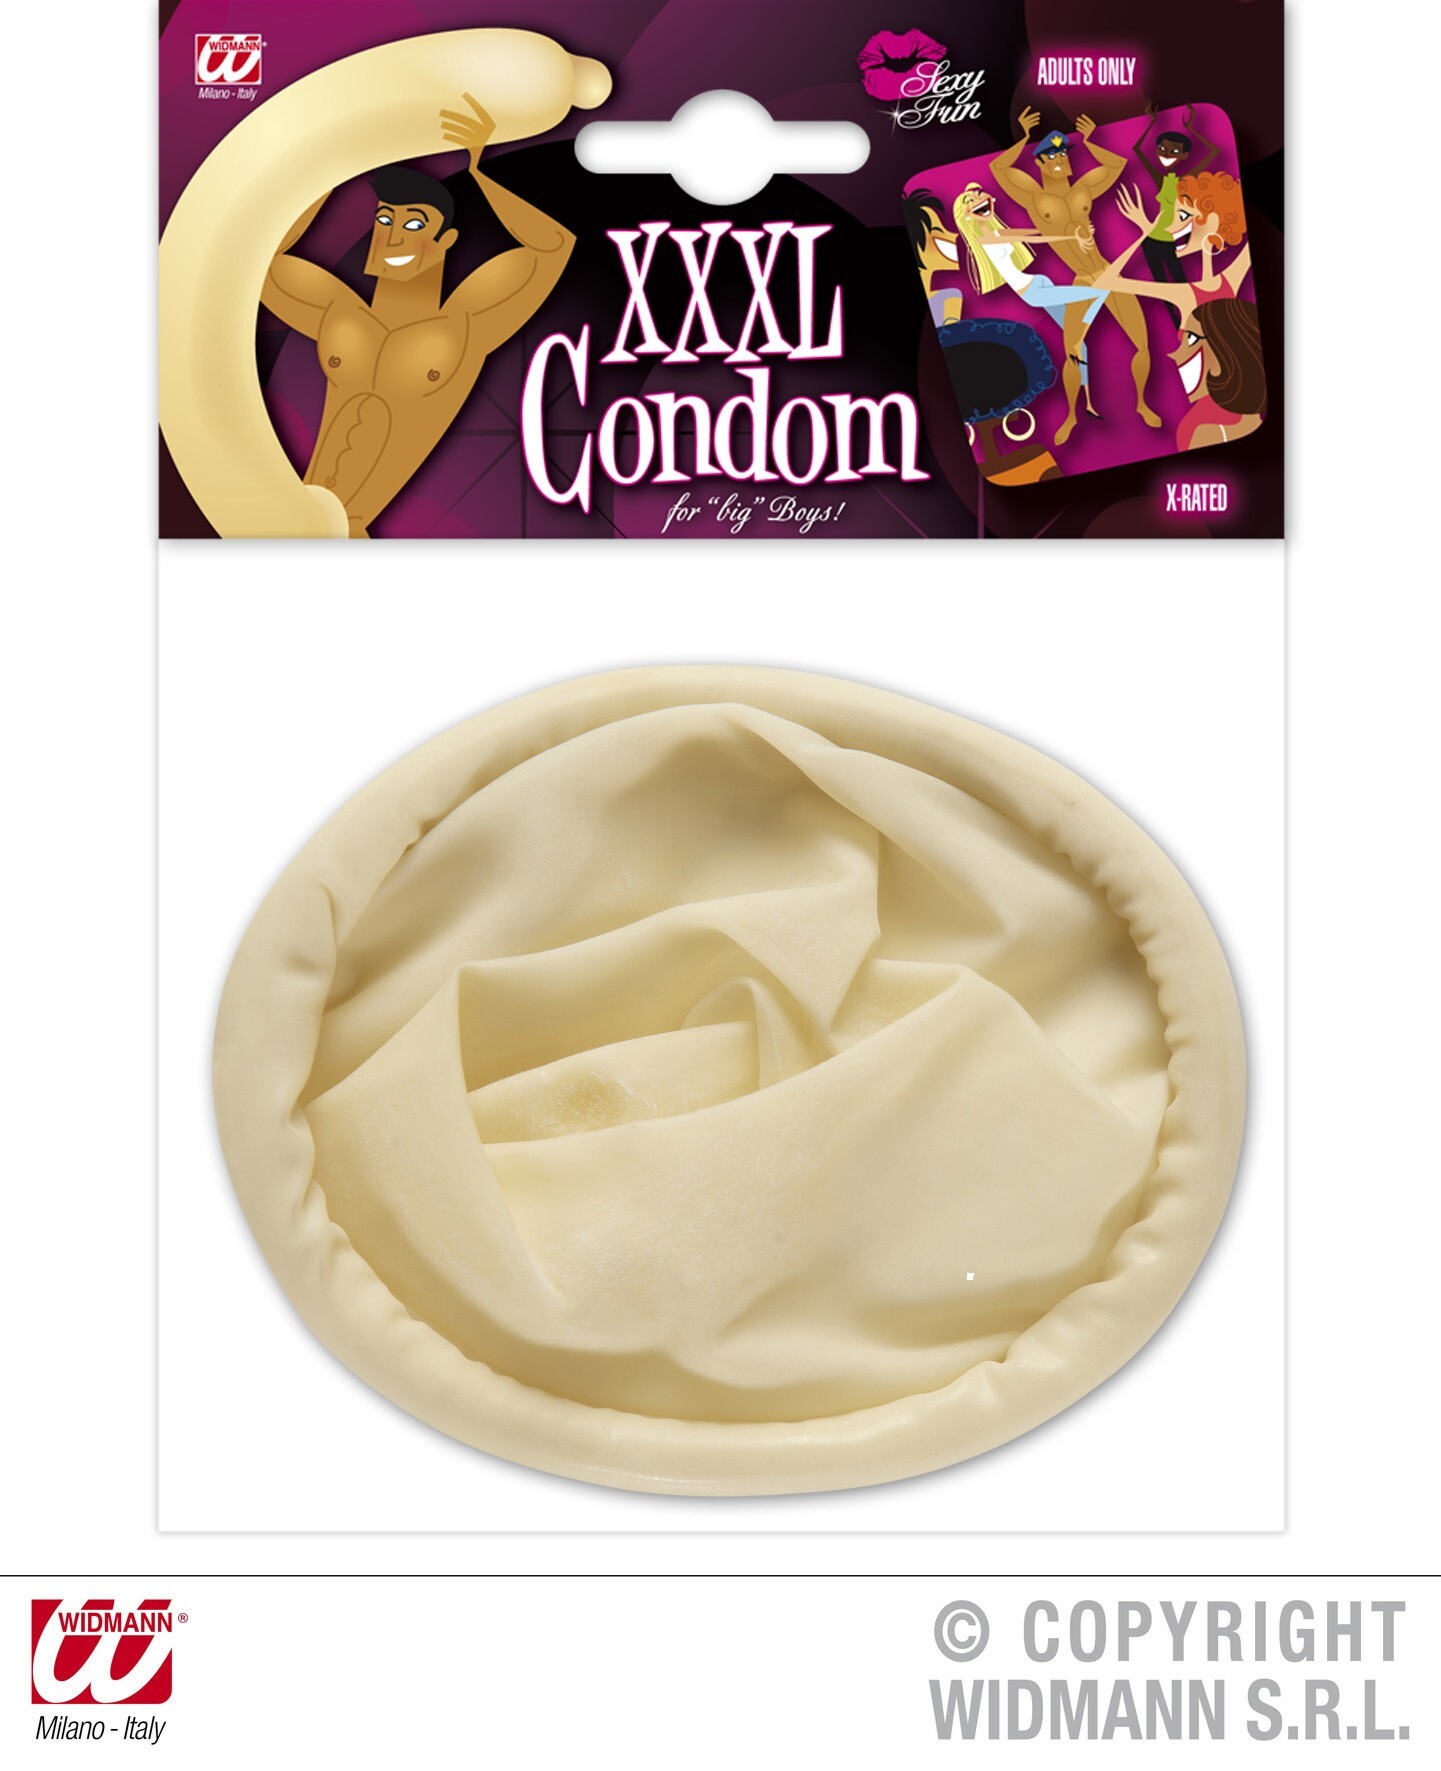 XXXL Condoom voor de fun